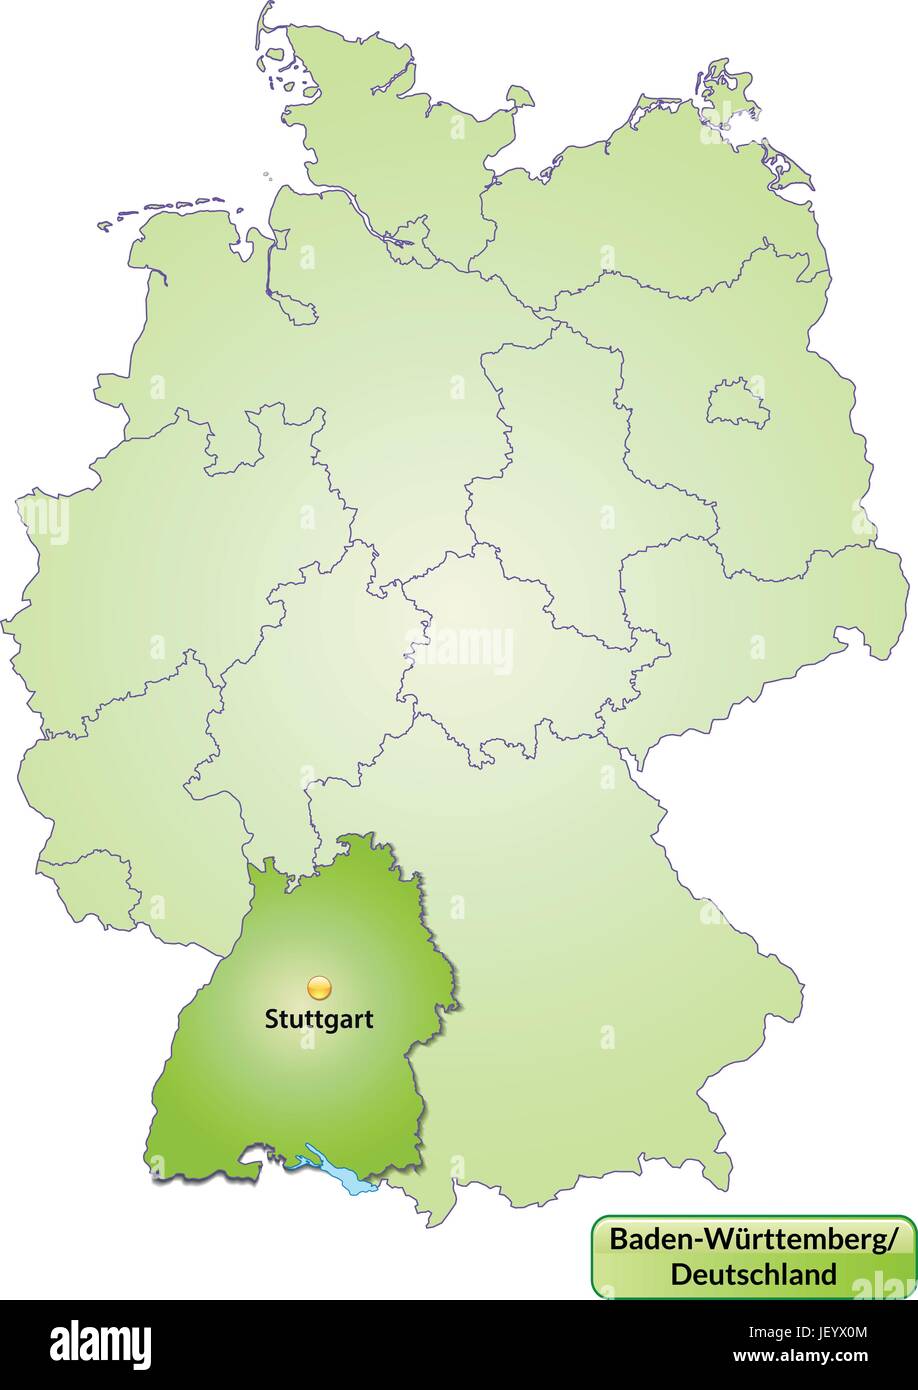 Karte von Baden-Württemberg mit Kapitellen in grün Stock Vektor